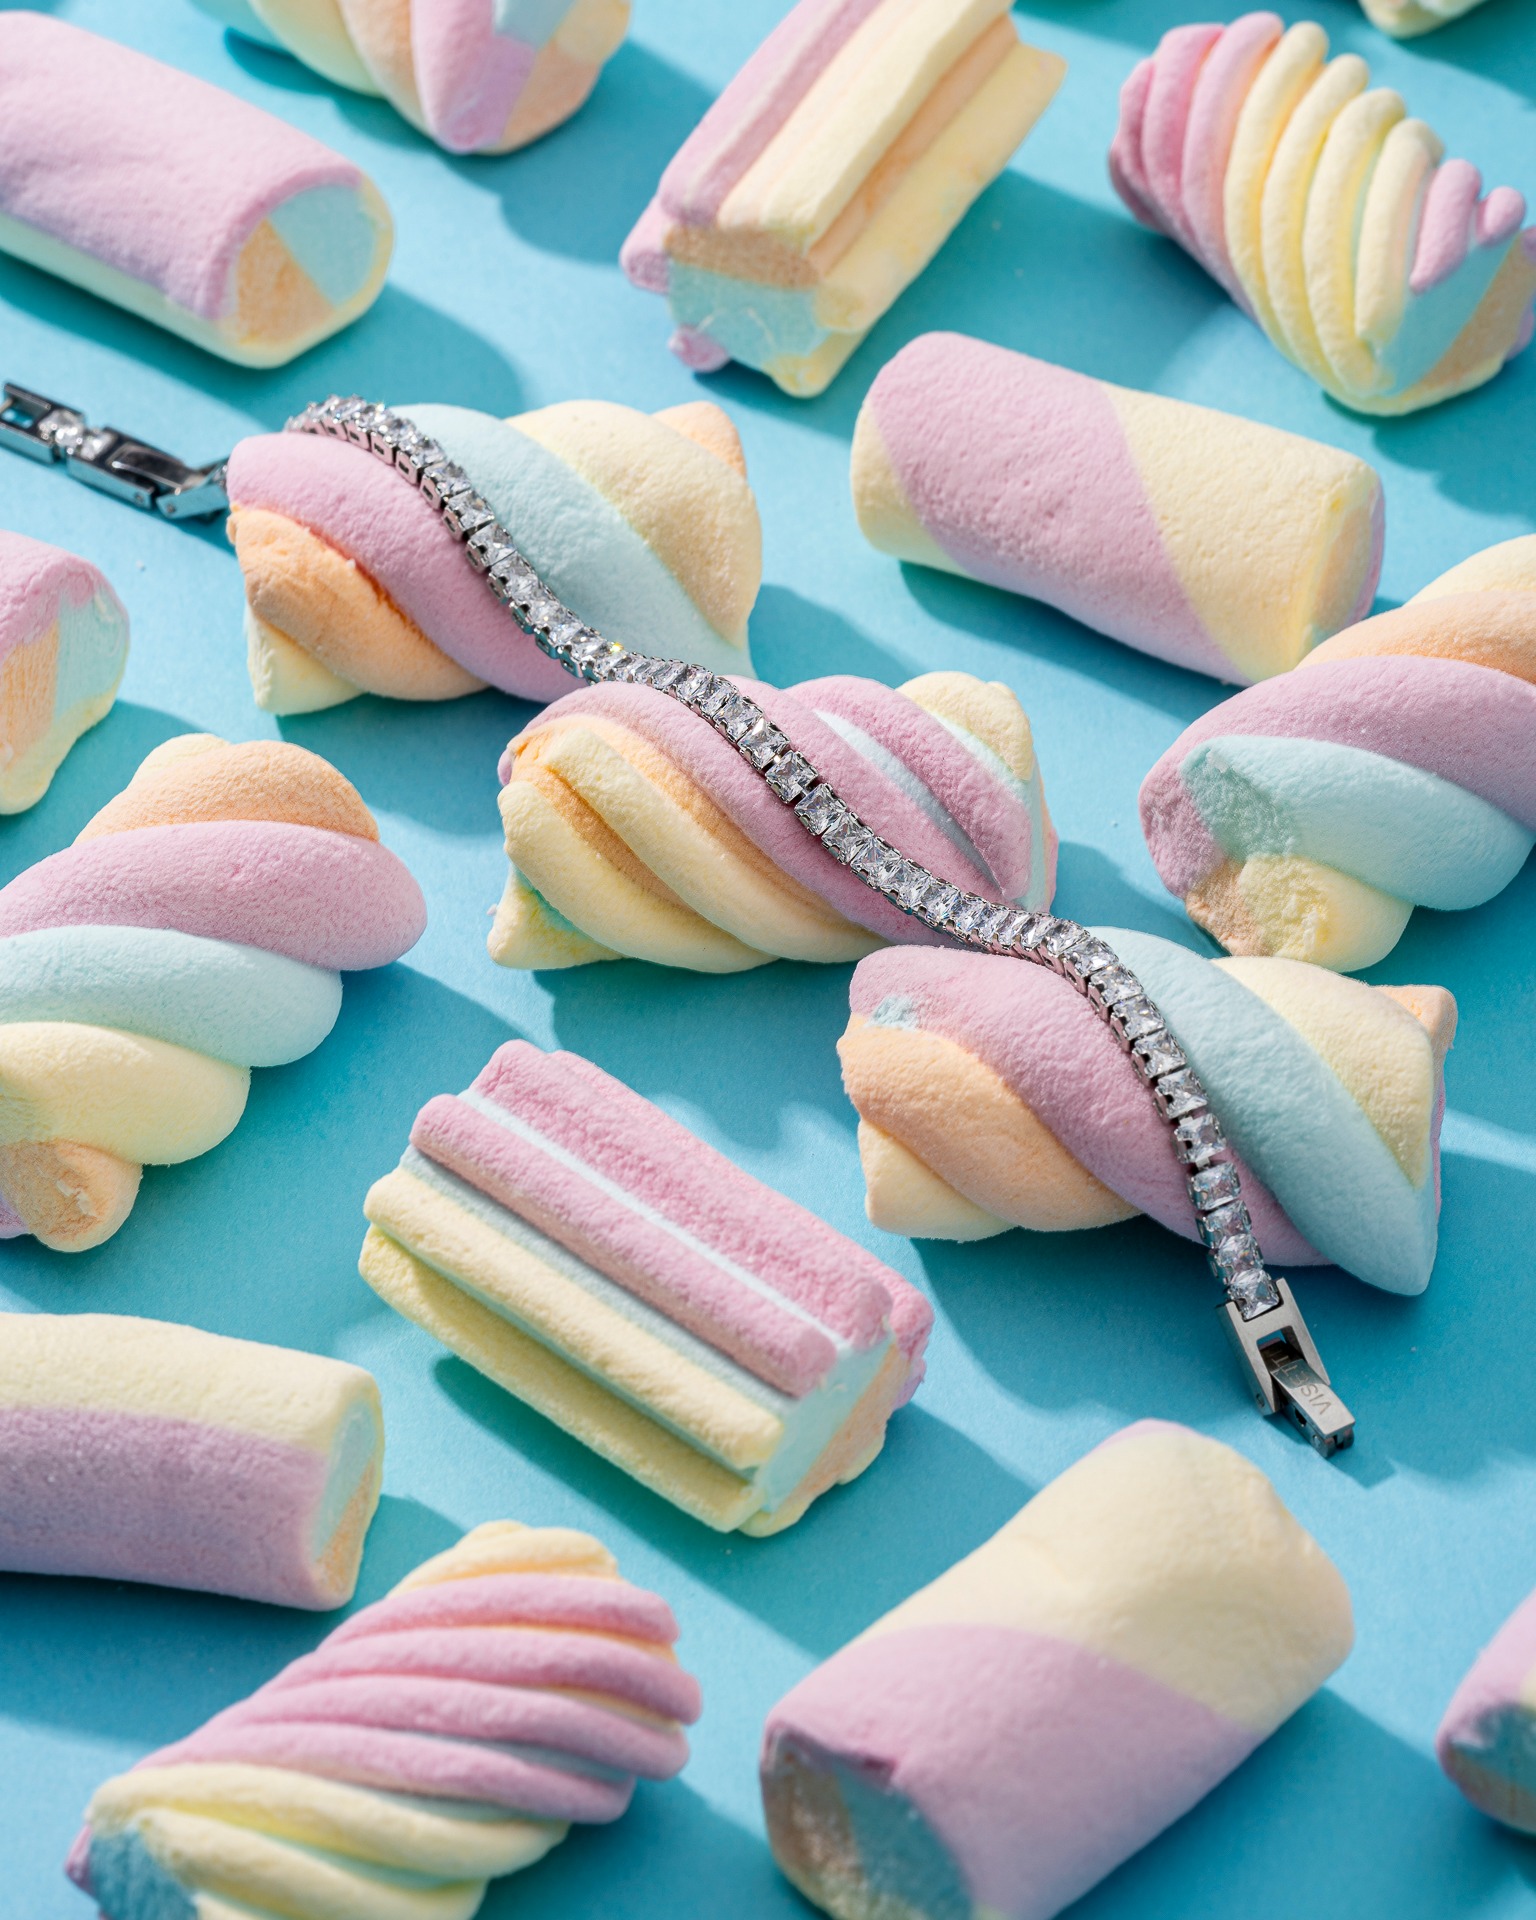 Ανακάλυψε την πιο γλυκιά συλλογή Candy Love 🍭 της #visetti για ένα εντυπωσιακό καλοκαιρνό look! 🏖️🌞

#VisettiJewels #CandyLove #stainlesssteel #artique #SS24 #SummerCollection24